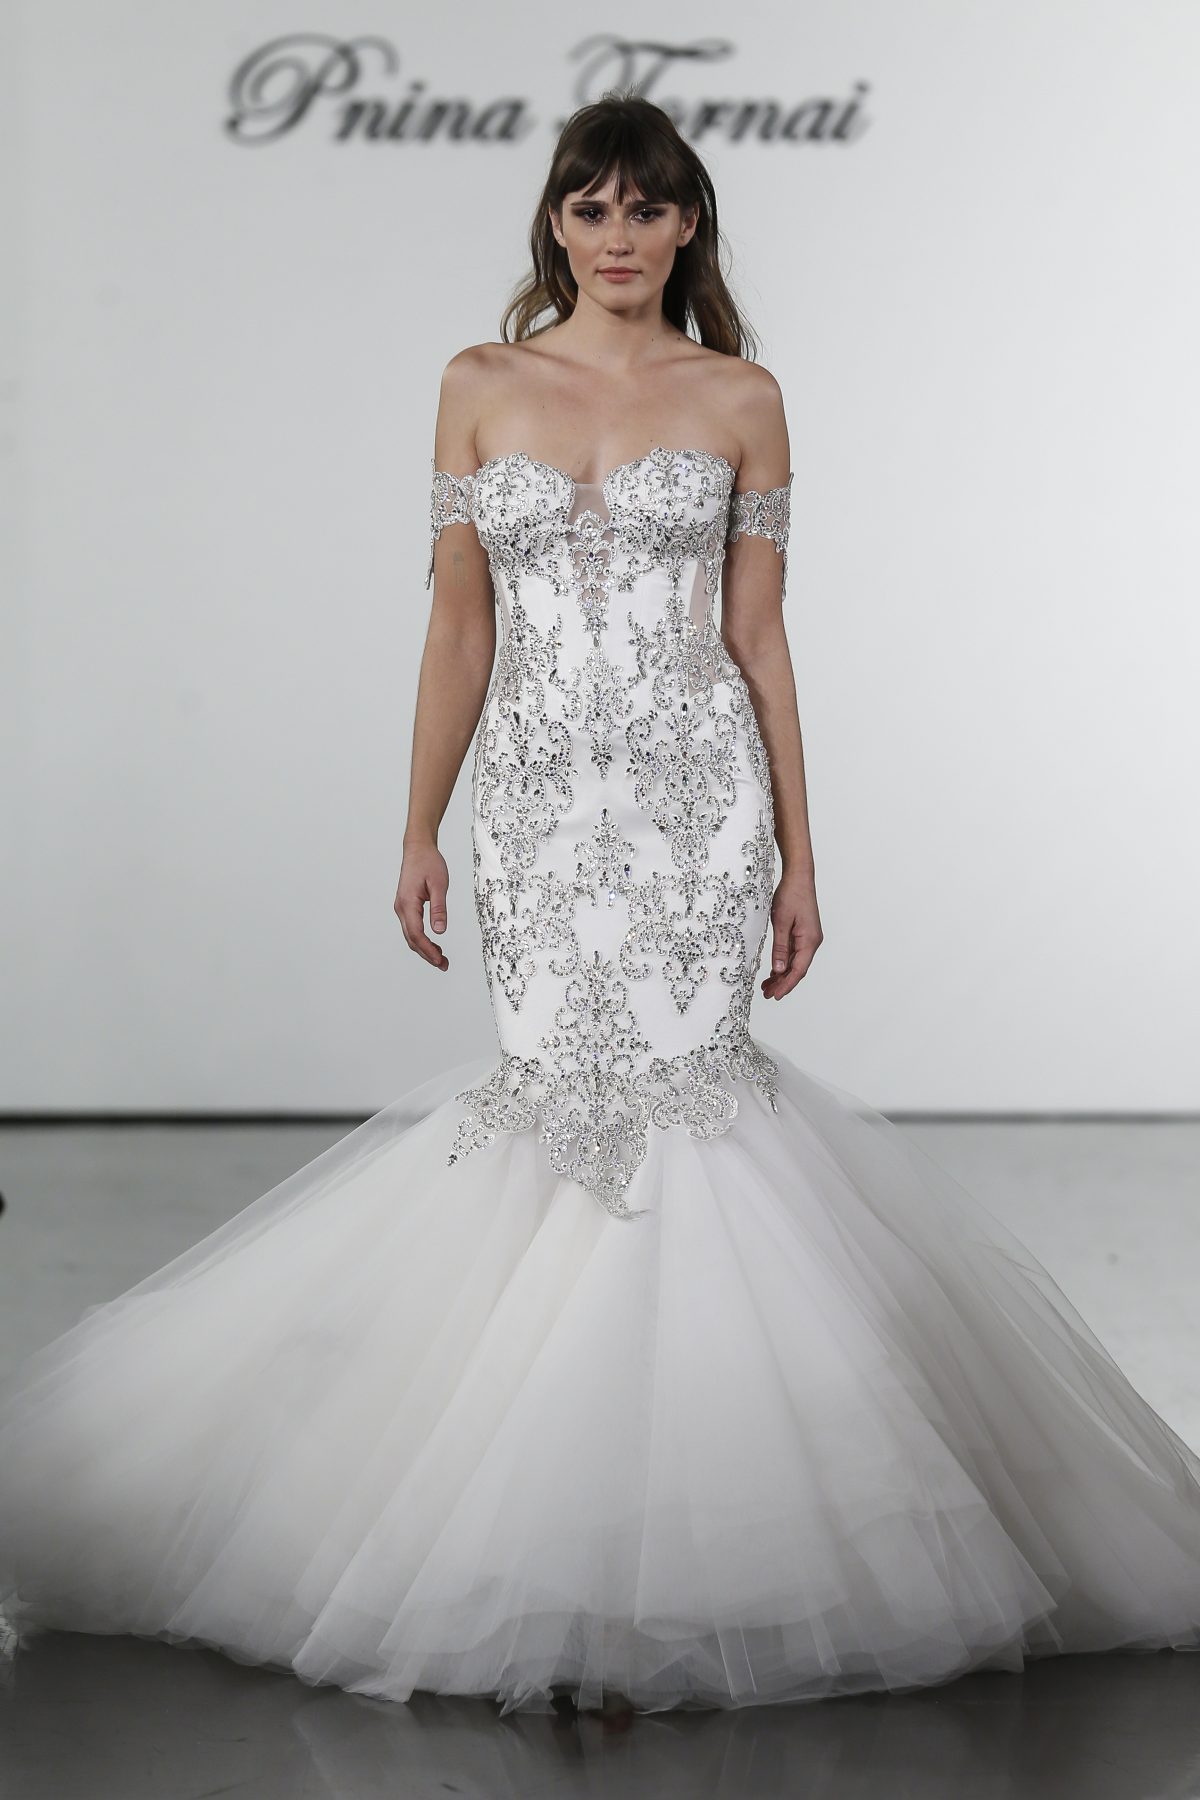 https://www.kleinfeldbridal.com/wp-content/uploads/2018/10/pnina-tornai-crystal-embellished-mermaid-tulle-skirt-wedding-dress-50000007-1200x1800.jpg